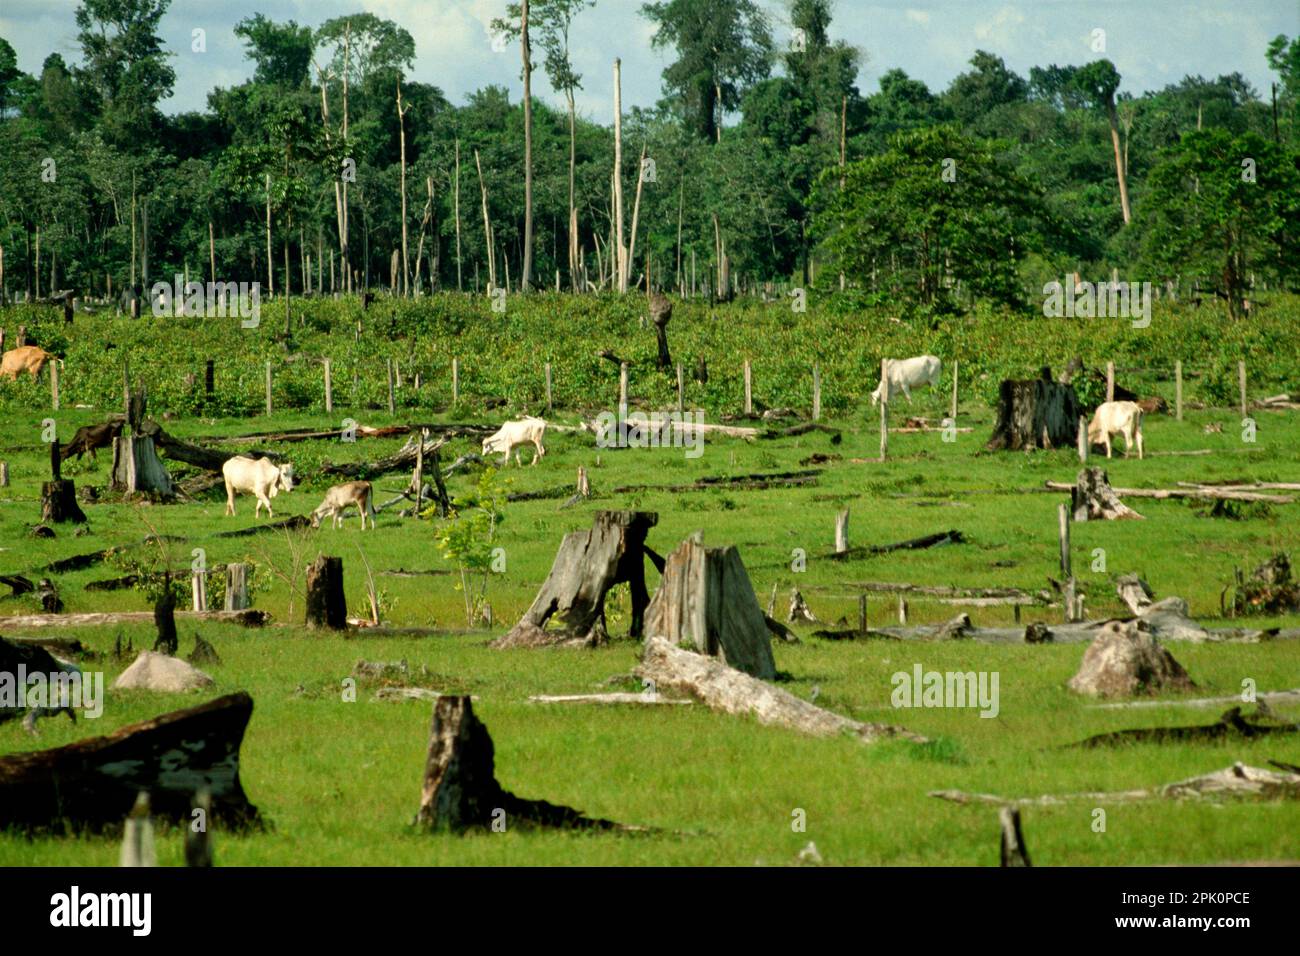 Bestiame che pascolava su una foresta pluviale tropicale pulita con i ceppi di alberi rimanenti, regione amazzonica, Para, Brasile. Il bestiame emette gas a effetto serra (principalmente metano) che contribuiscono al riscaldamento globale. Foto Stock